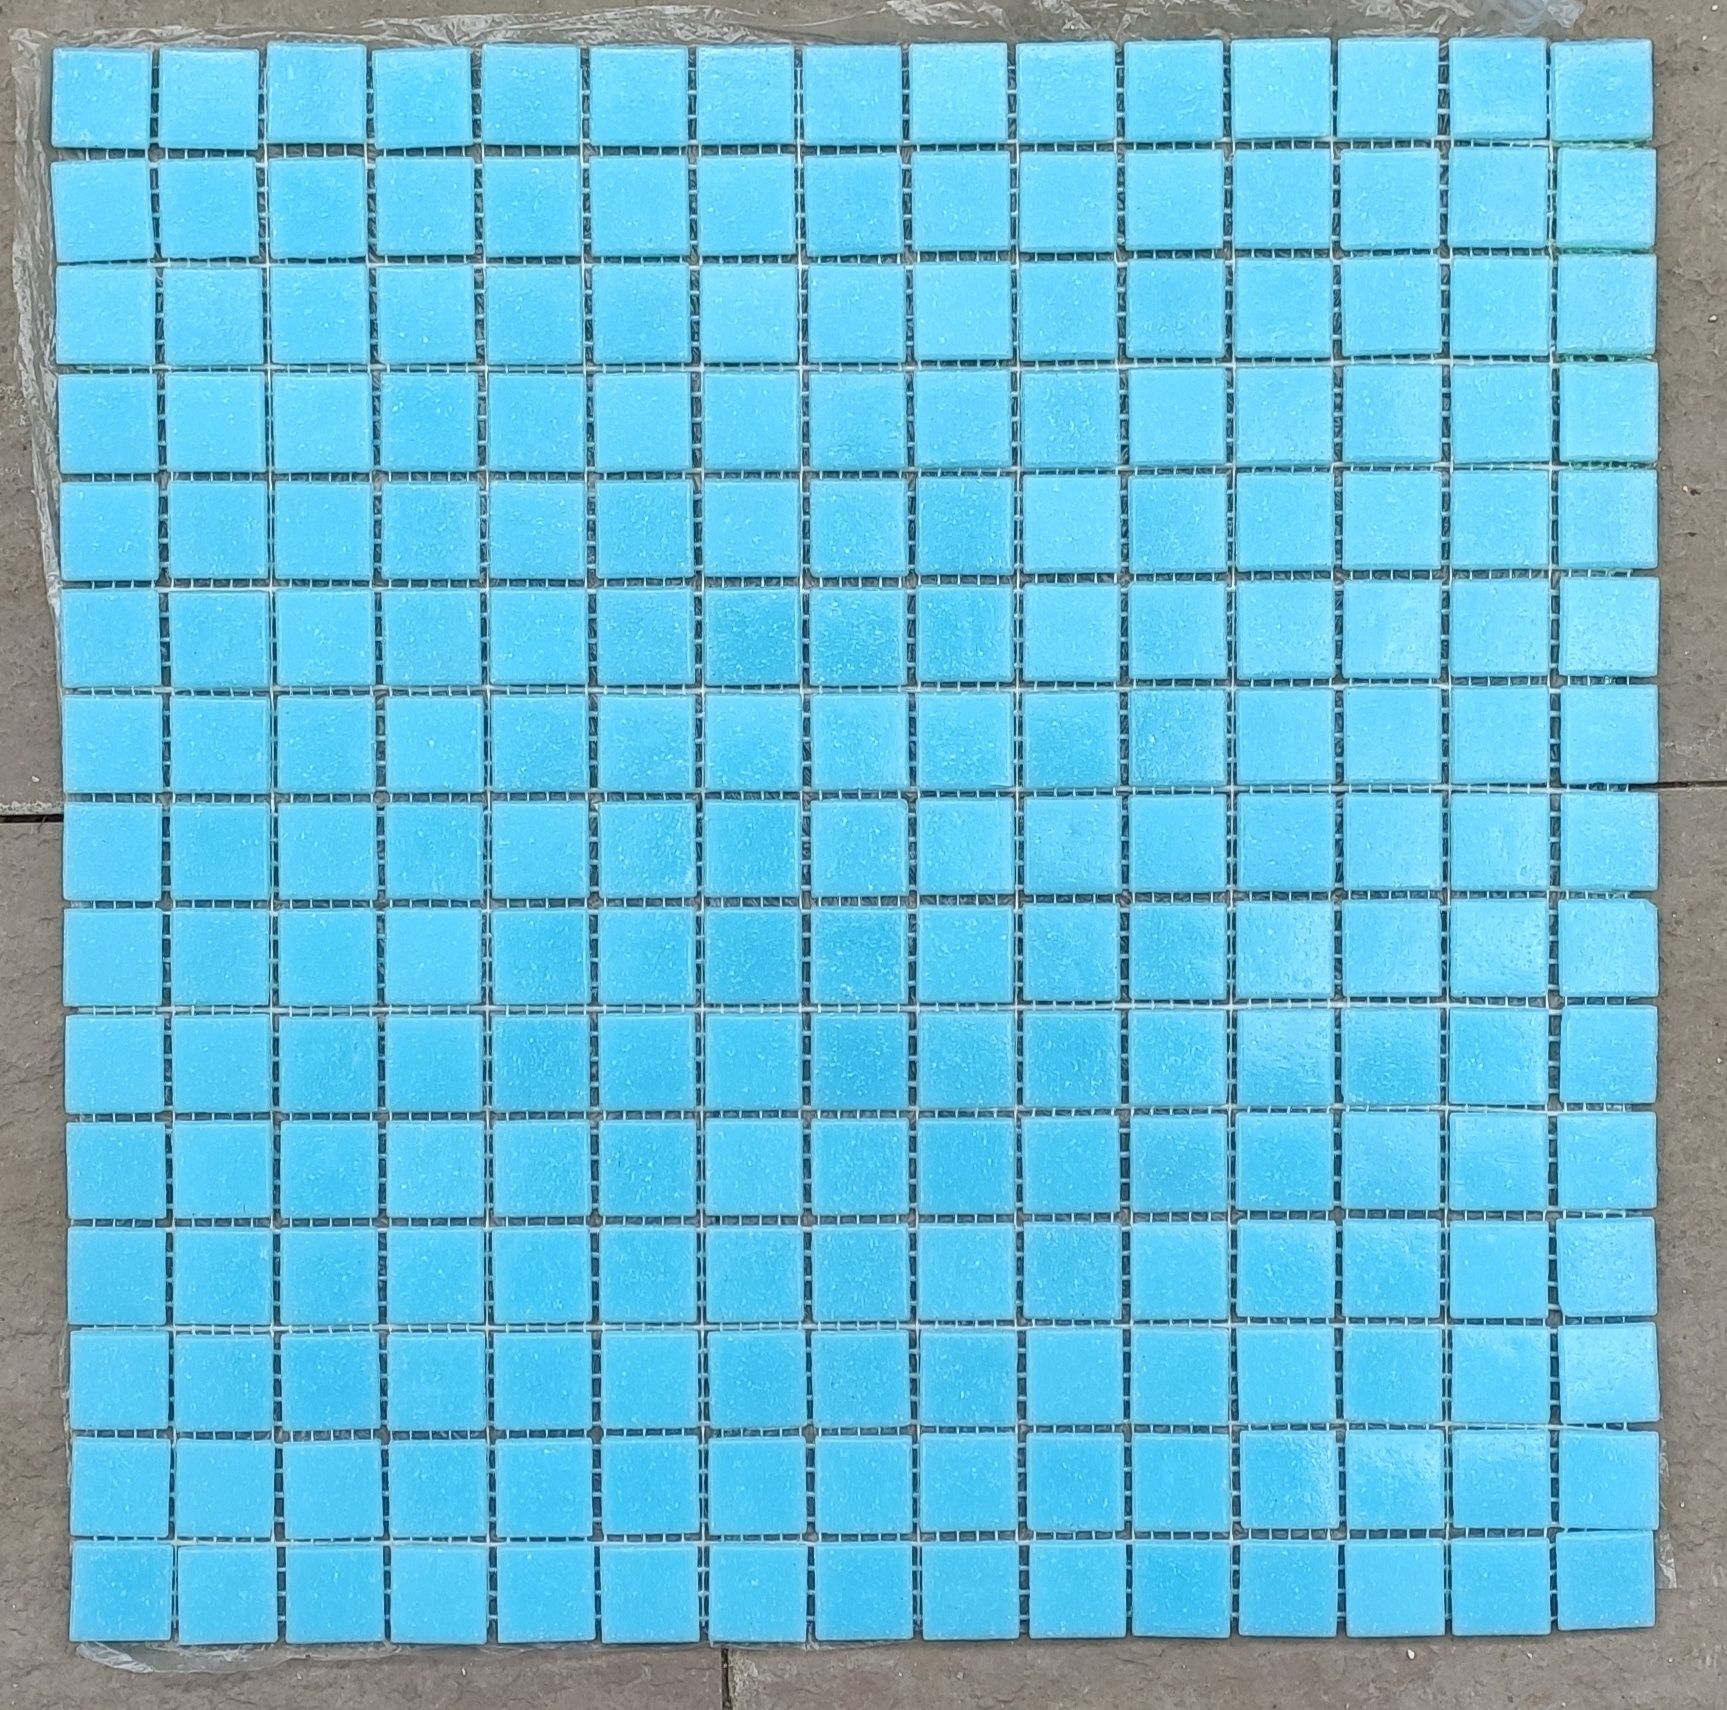 Azulejos/Mosaicos pastilha para piscinas, cabines duche, etc